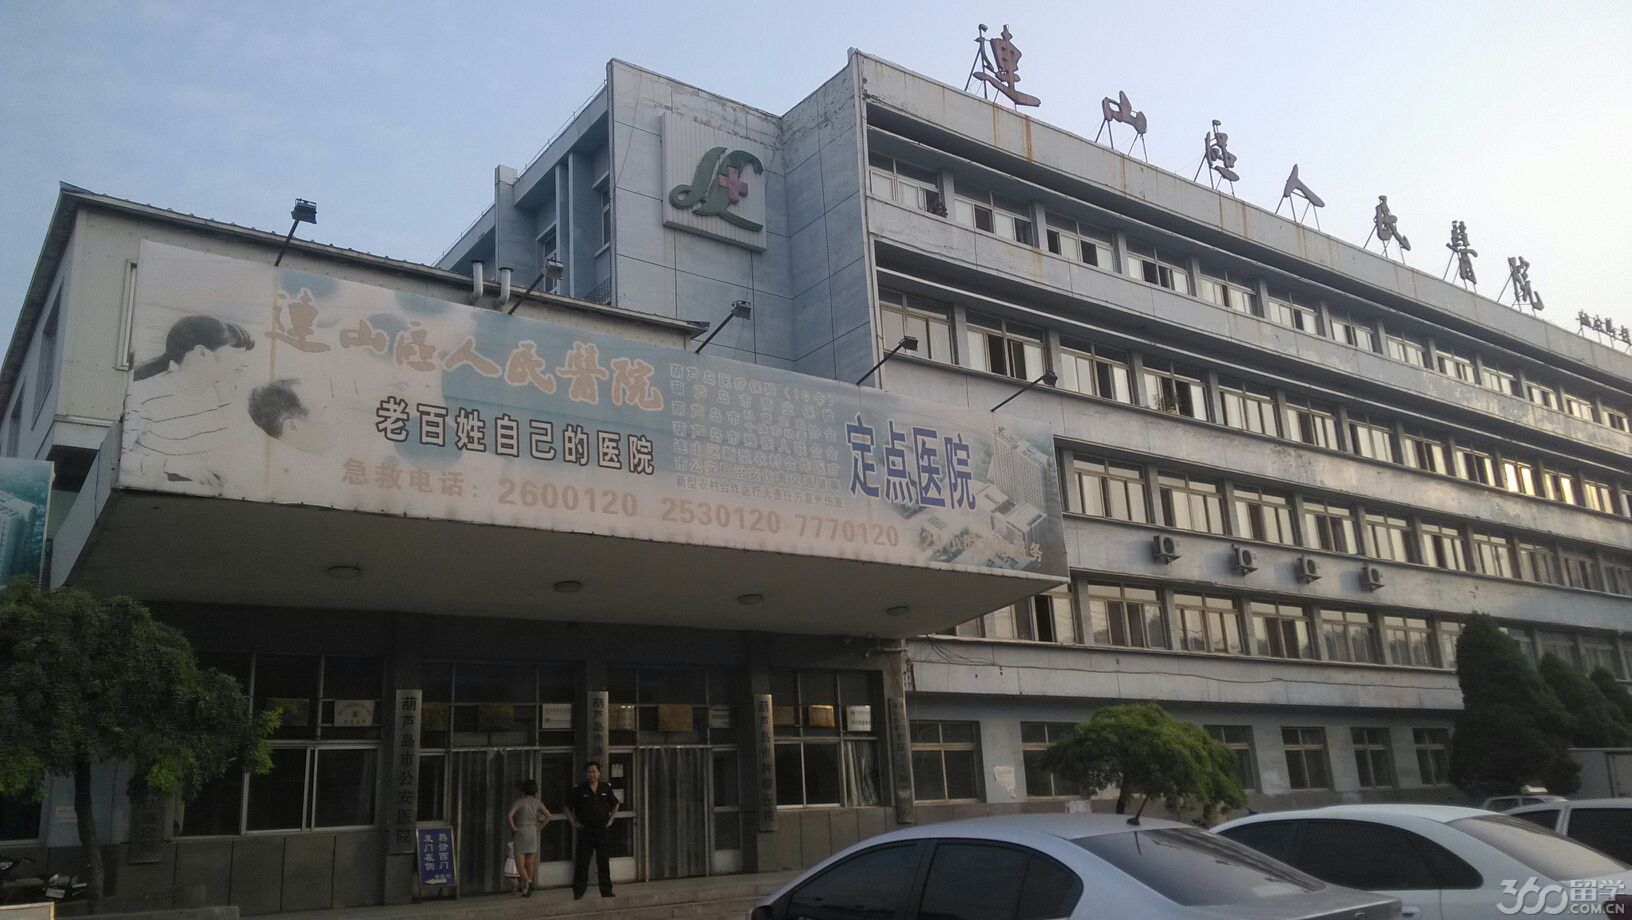 9个城市街道办事处,2个省级开发区——辽宁省扶贫实验区,杨家杖子经济